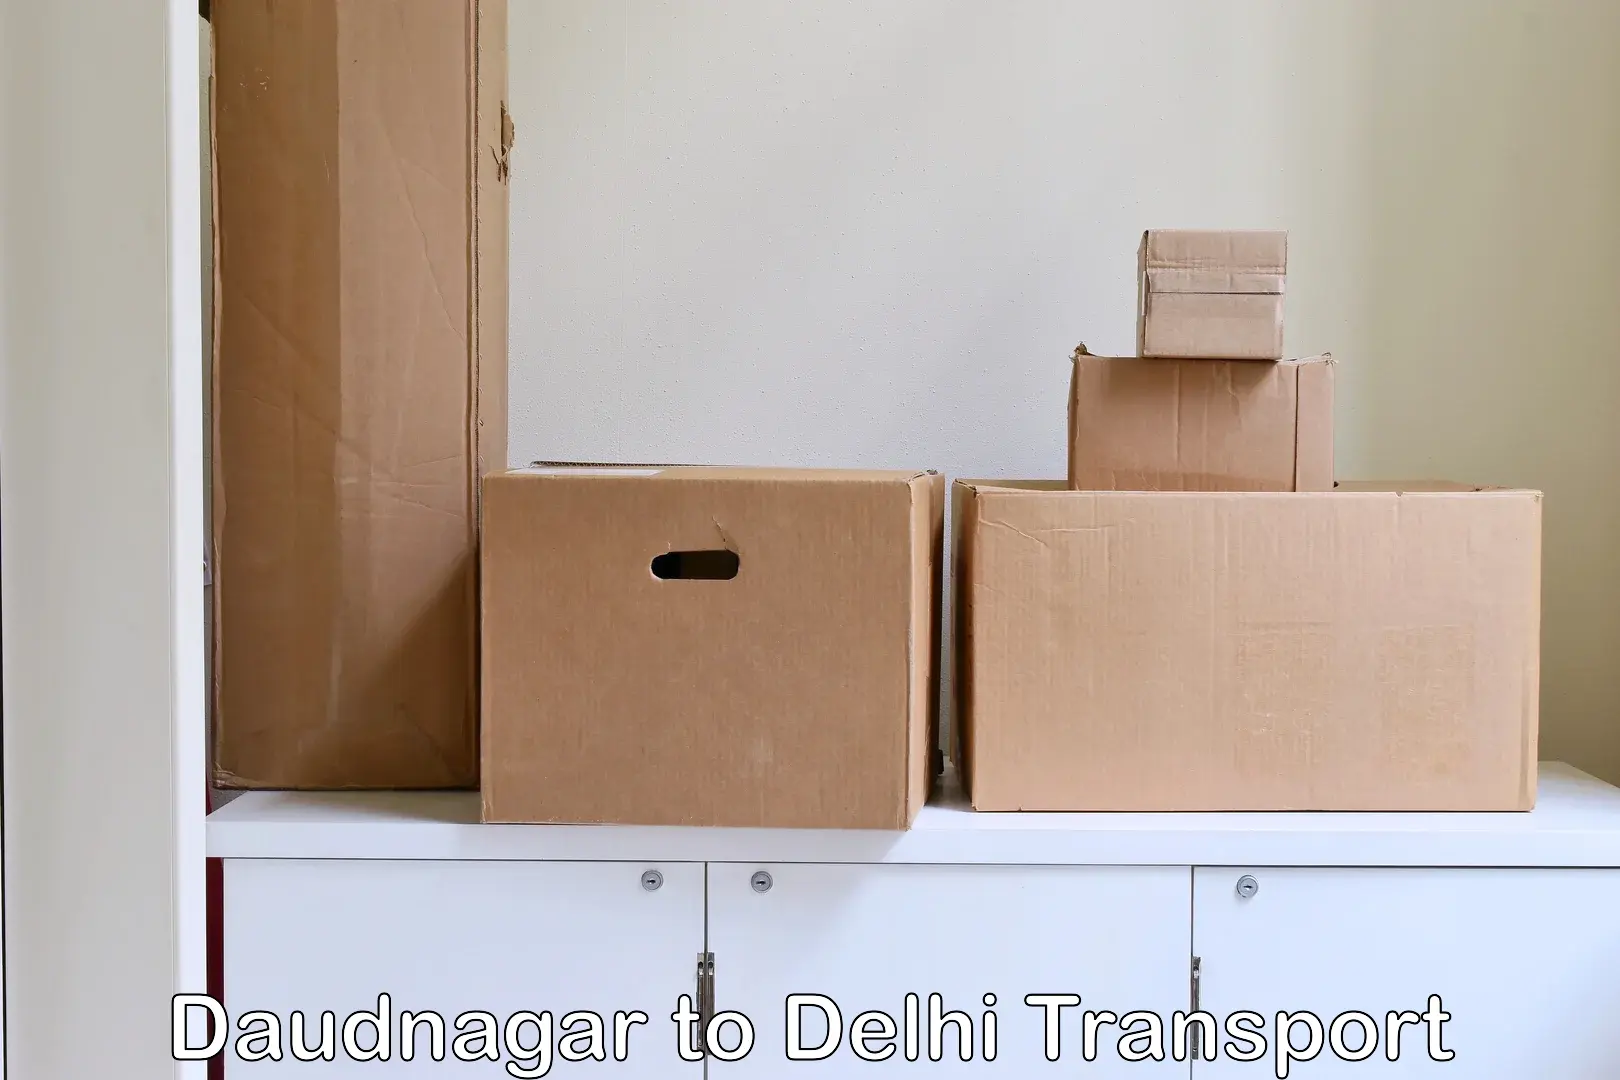 Cargo transportation services Daudnagar to NIT Delhi